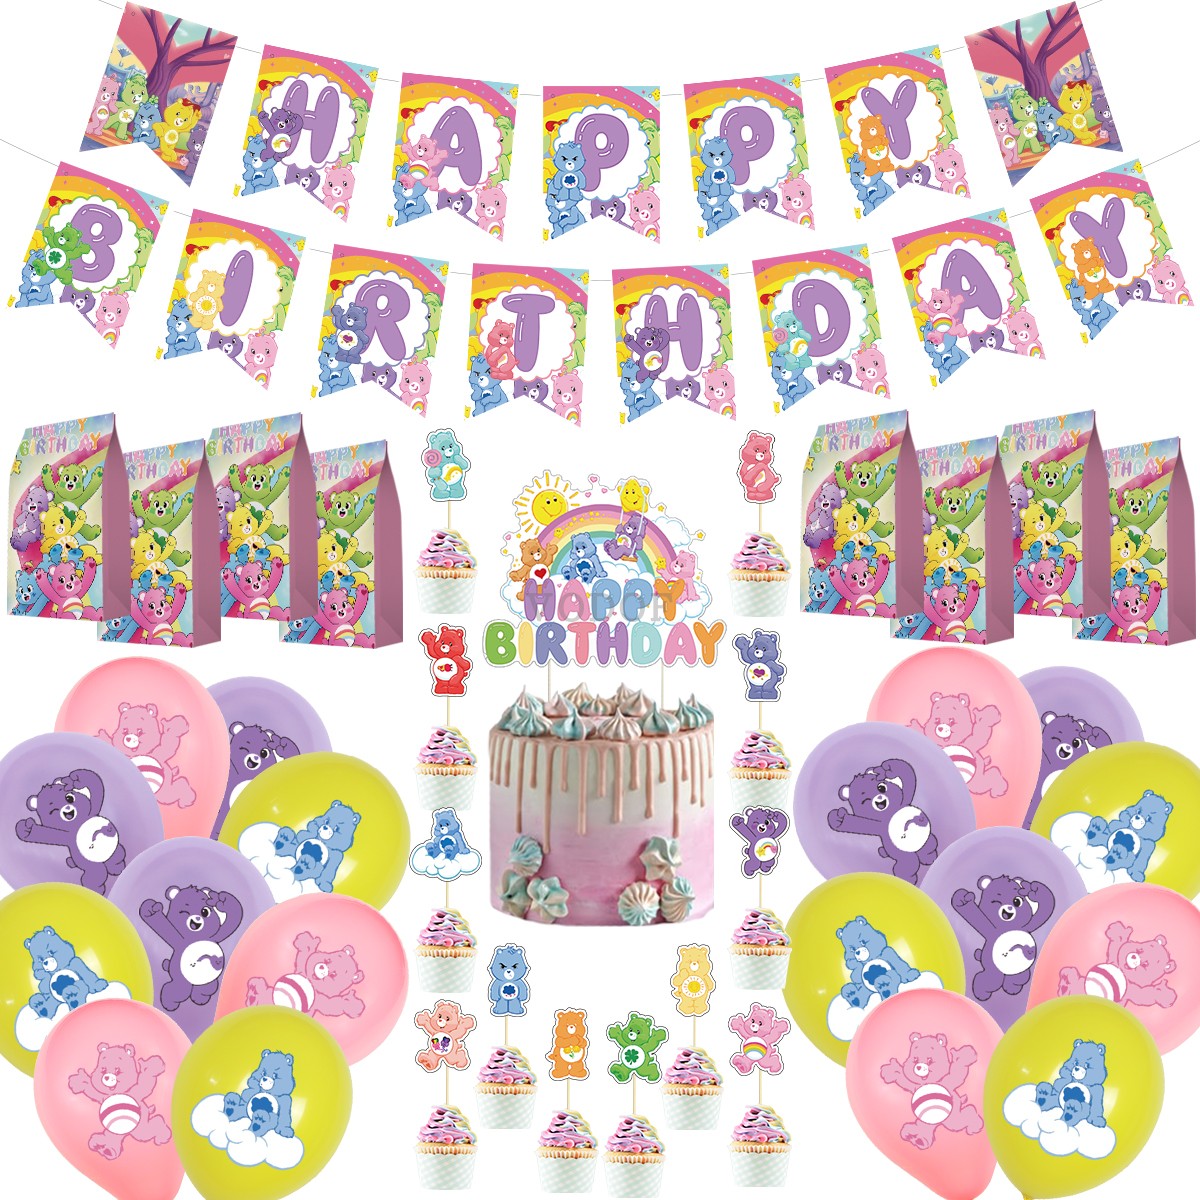 粉护理熊主题游戏熊生日派对装饰字母拉旗蛋糕插排插旗礼品袋气球